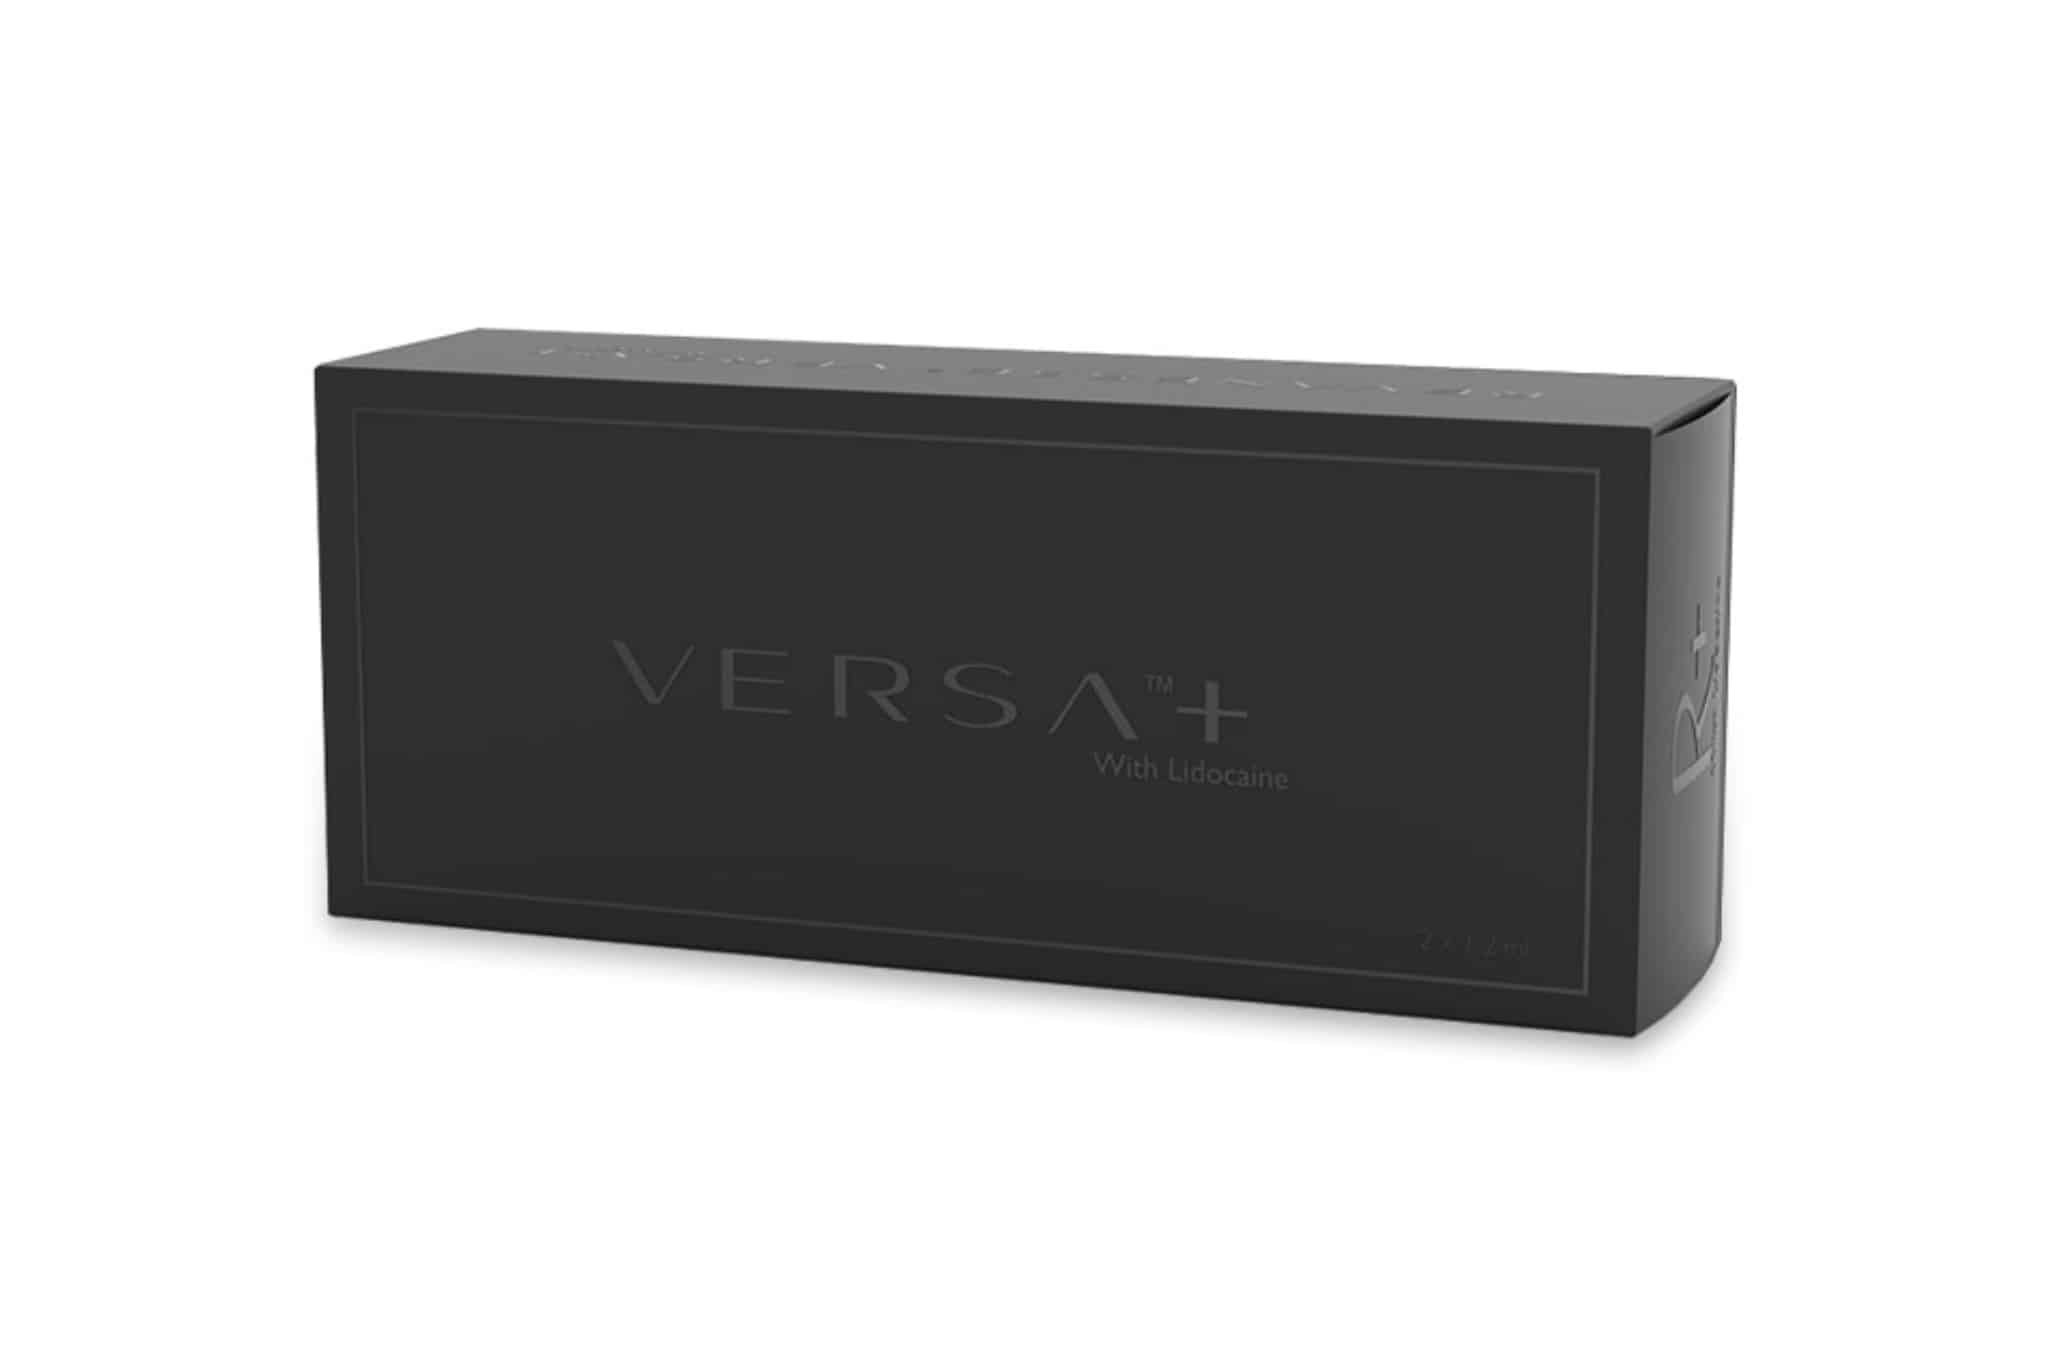 Versa Packaging